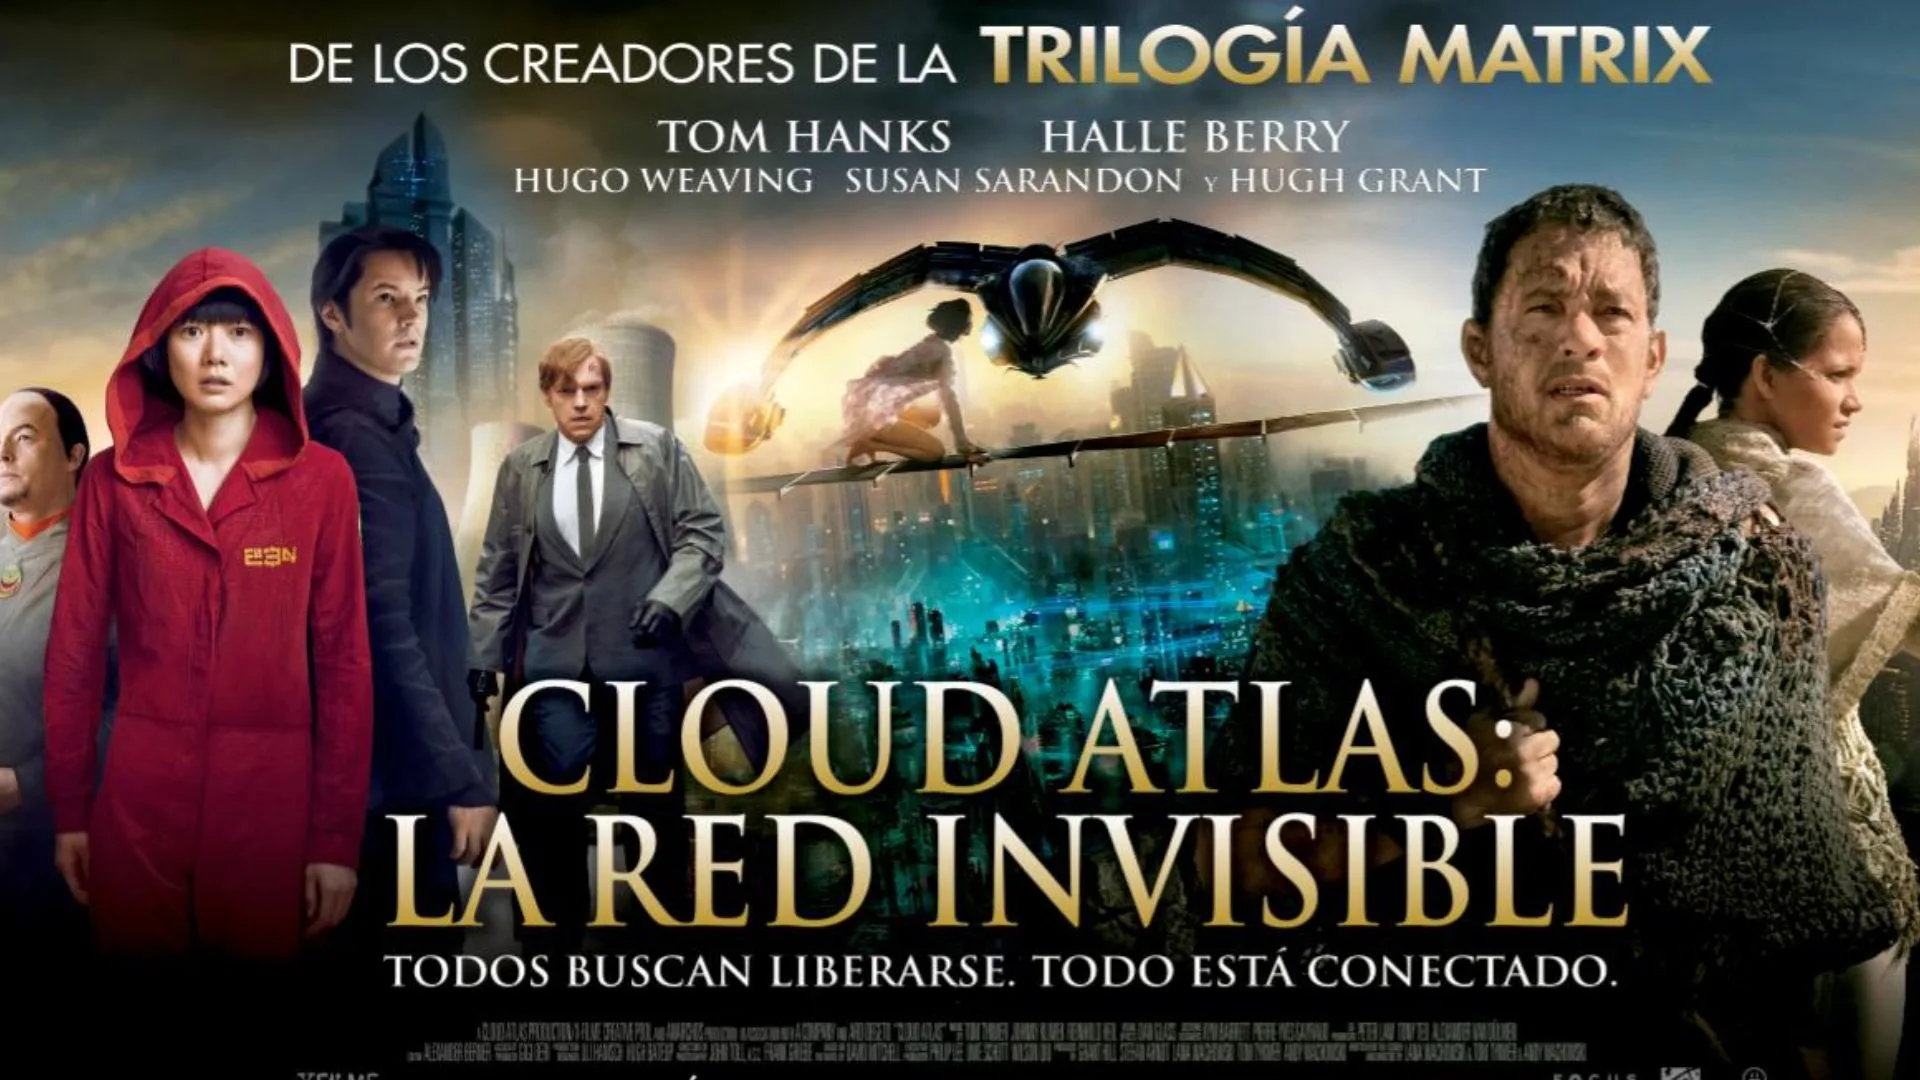 Cloud Atlas: La red invisible permanece como una joya olvidada en la filmografía de las hermanas Wachowski